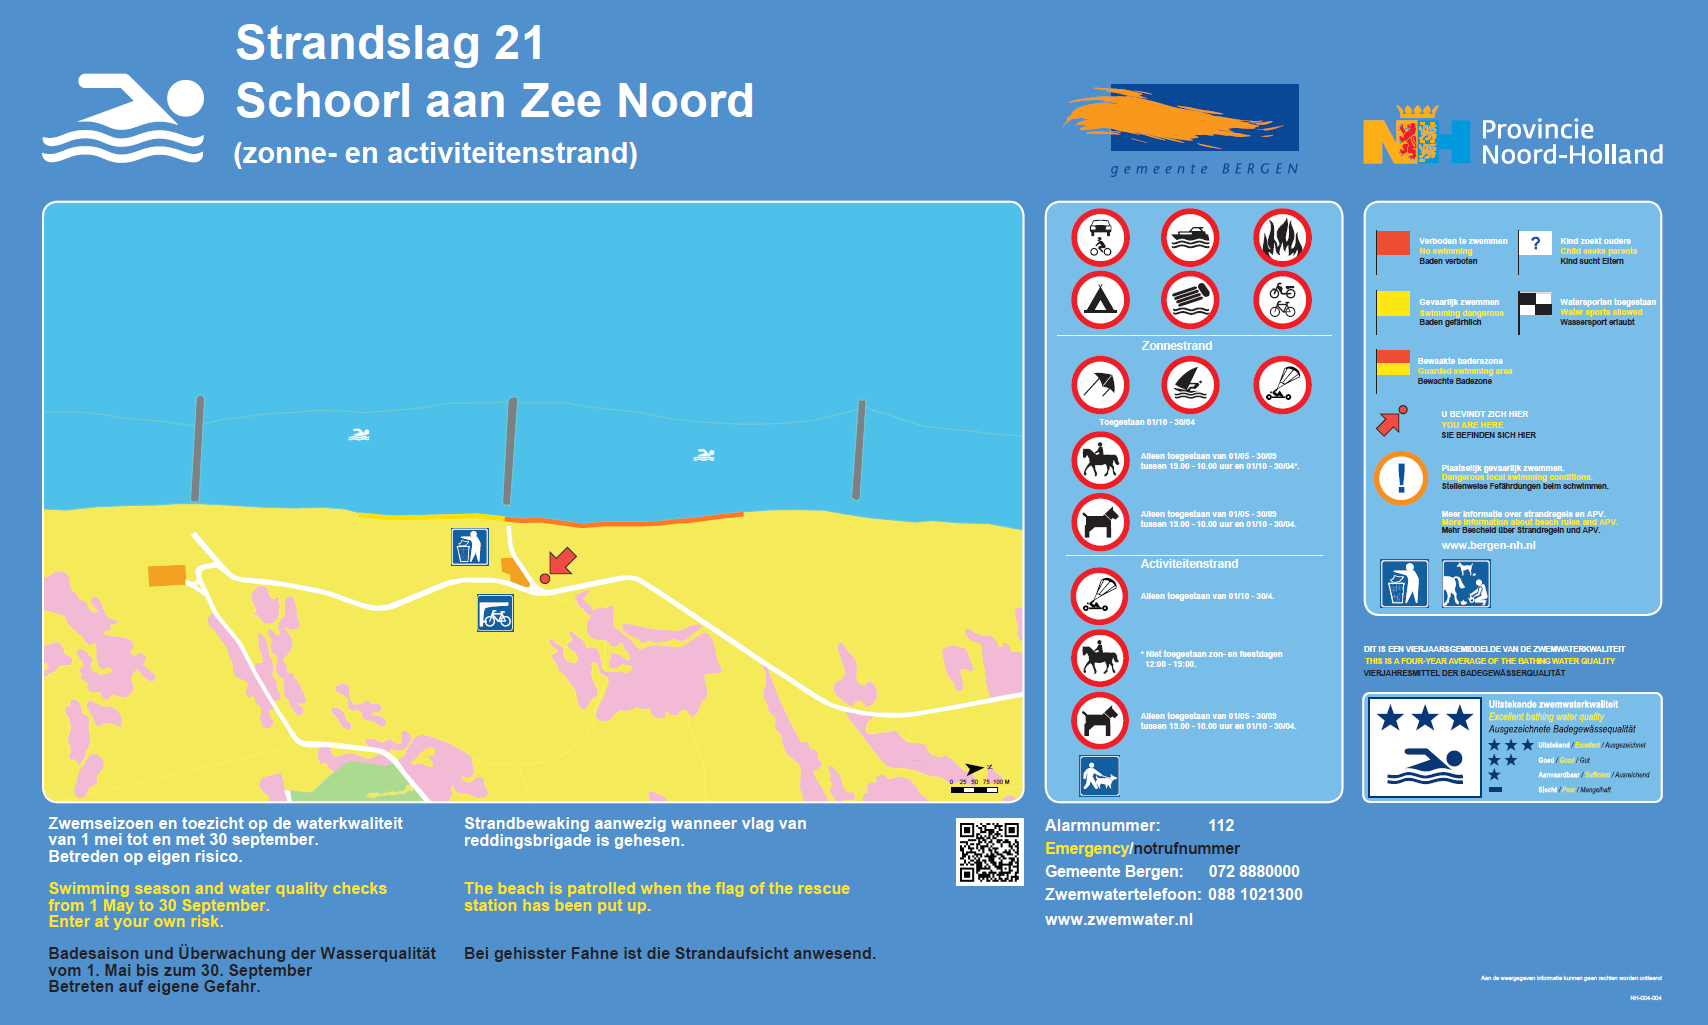 Het informatiebord bij zwemlocatie Schoorl aan Zee Noord, Strandslag 21